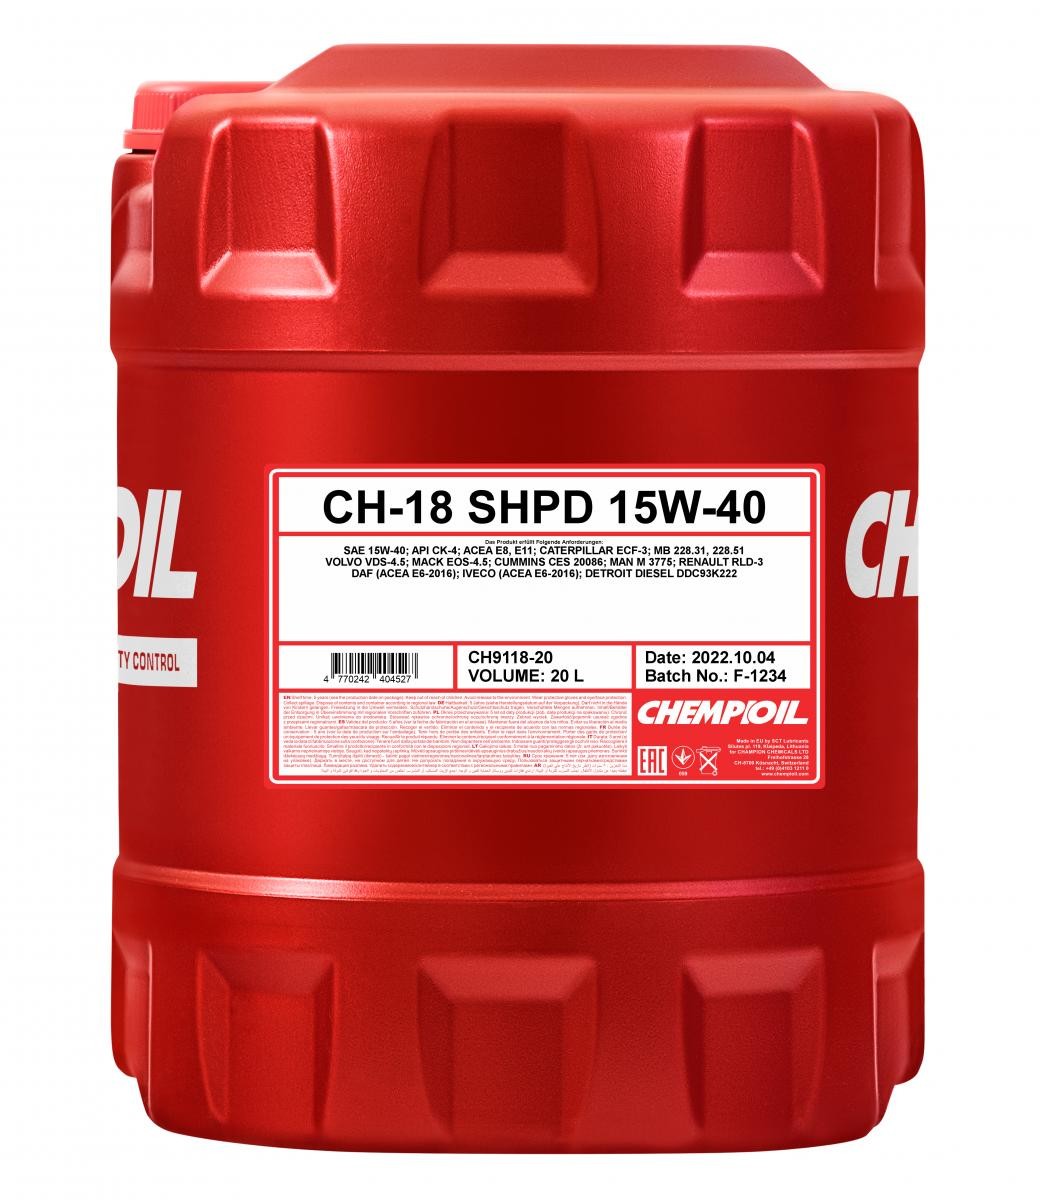 Buy Engine oil CHEMPIOIL petrol CH9118-20 TRUCK, CH-18 SHPD 15W-40, 20l